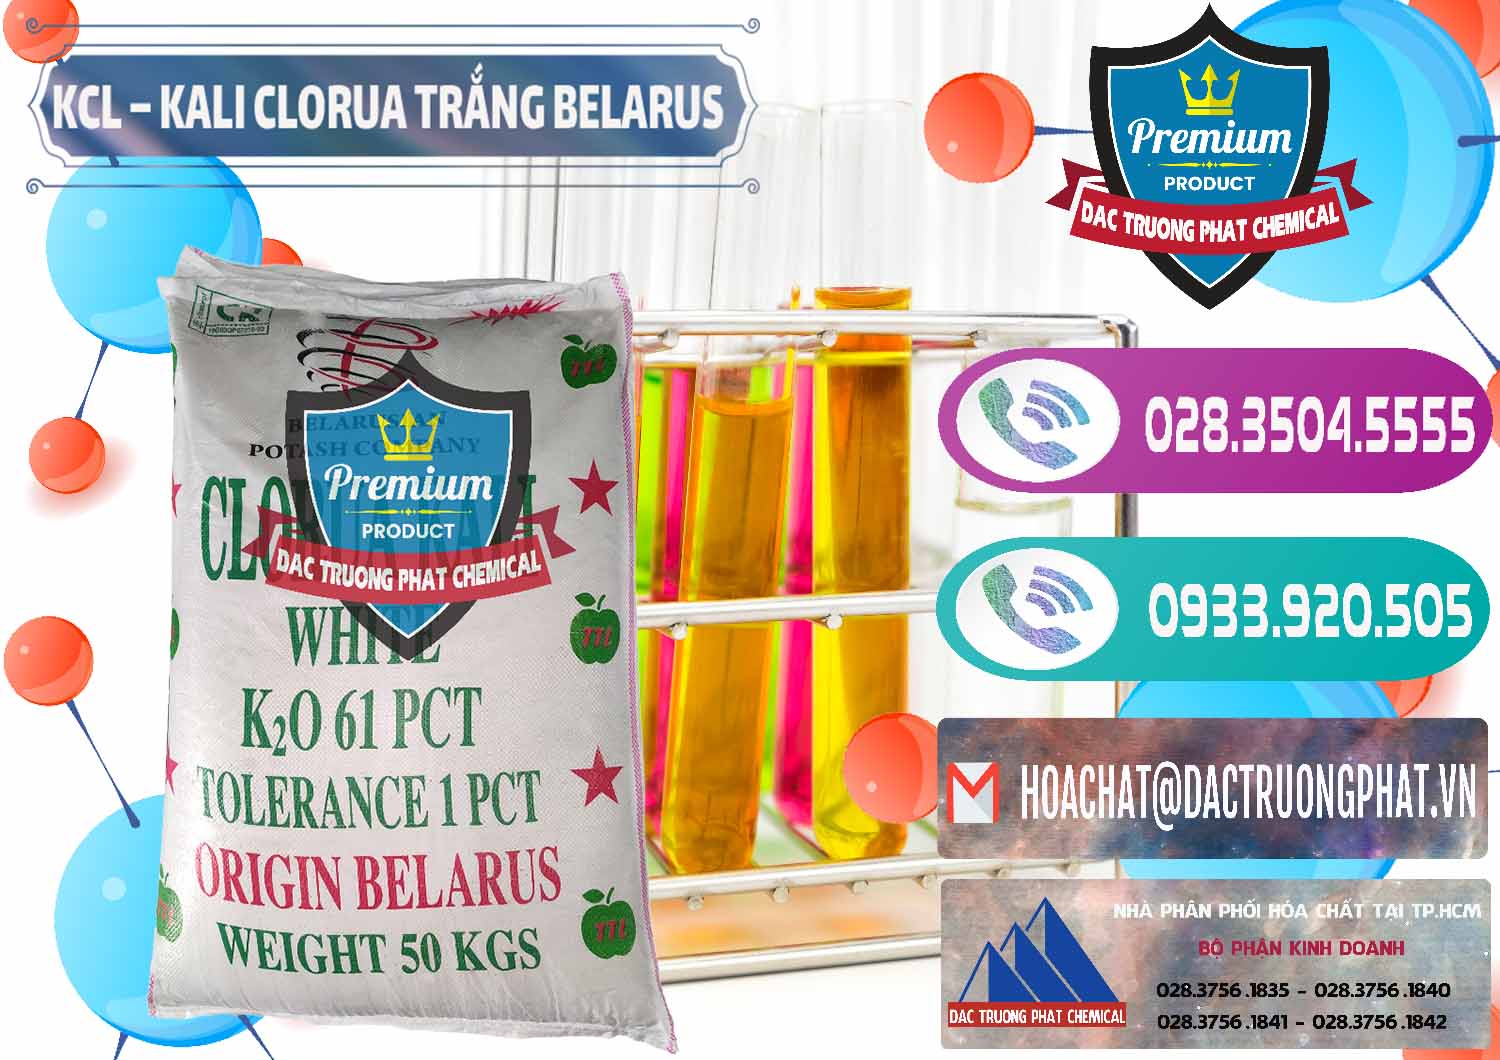 Công ty kinh doanh ( bán ) KCL – Kali Clorua Trắng Belarus - 0085 - Nhà nhập khẩu ( cung cấp ) hóa chất tại TP.HCM - hoachatxulynuoc.com